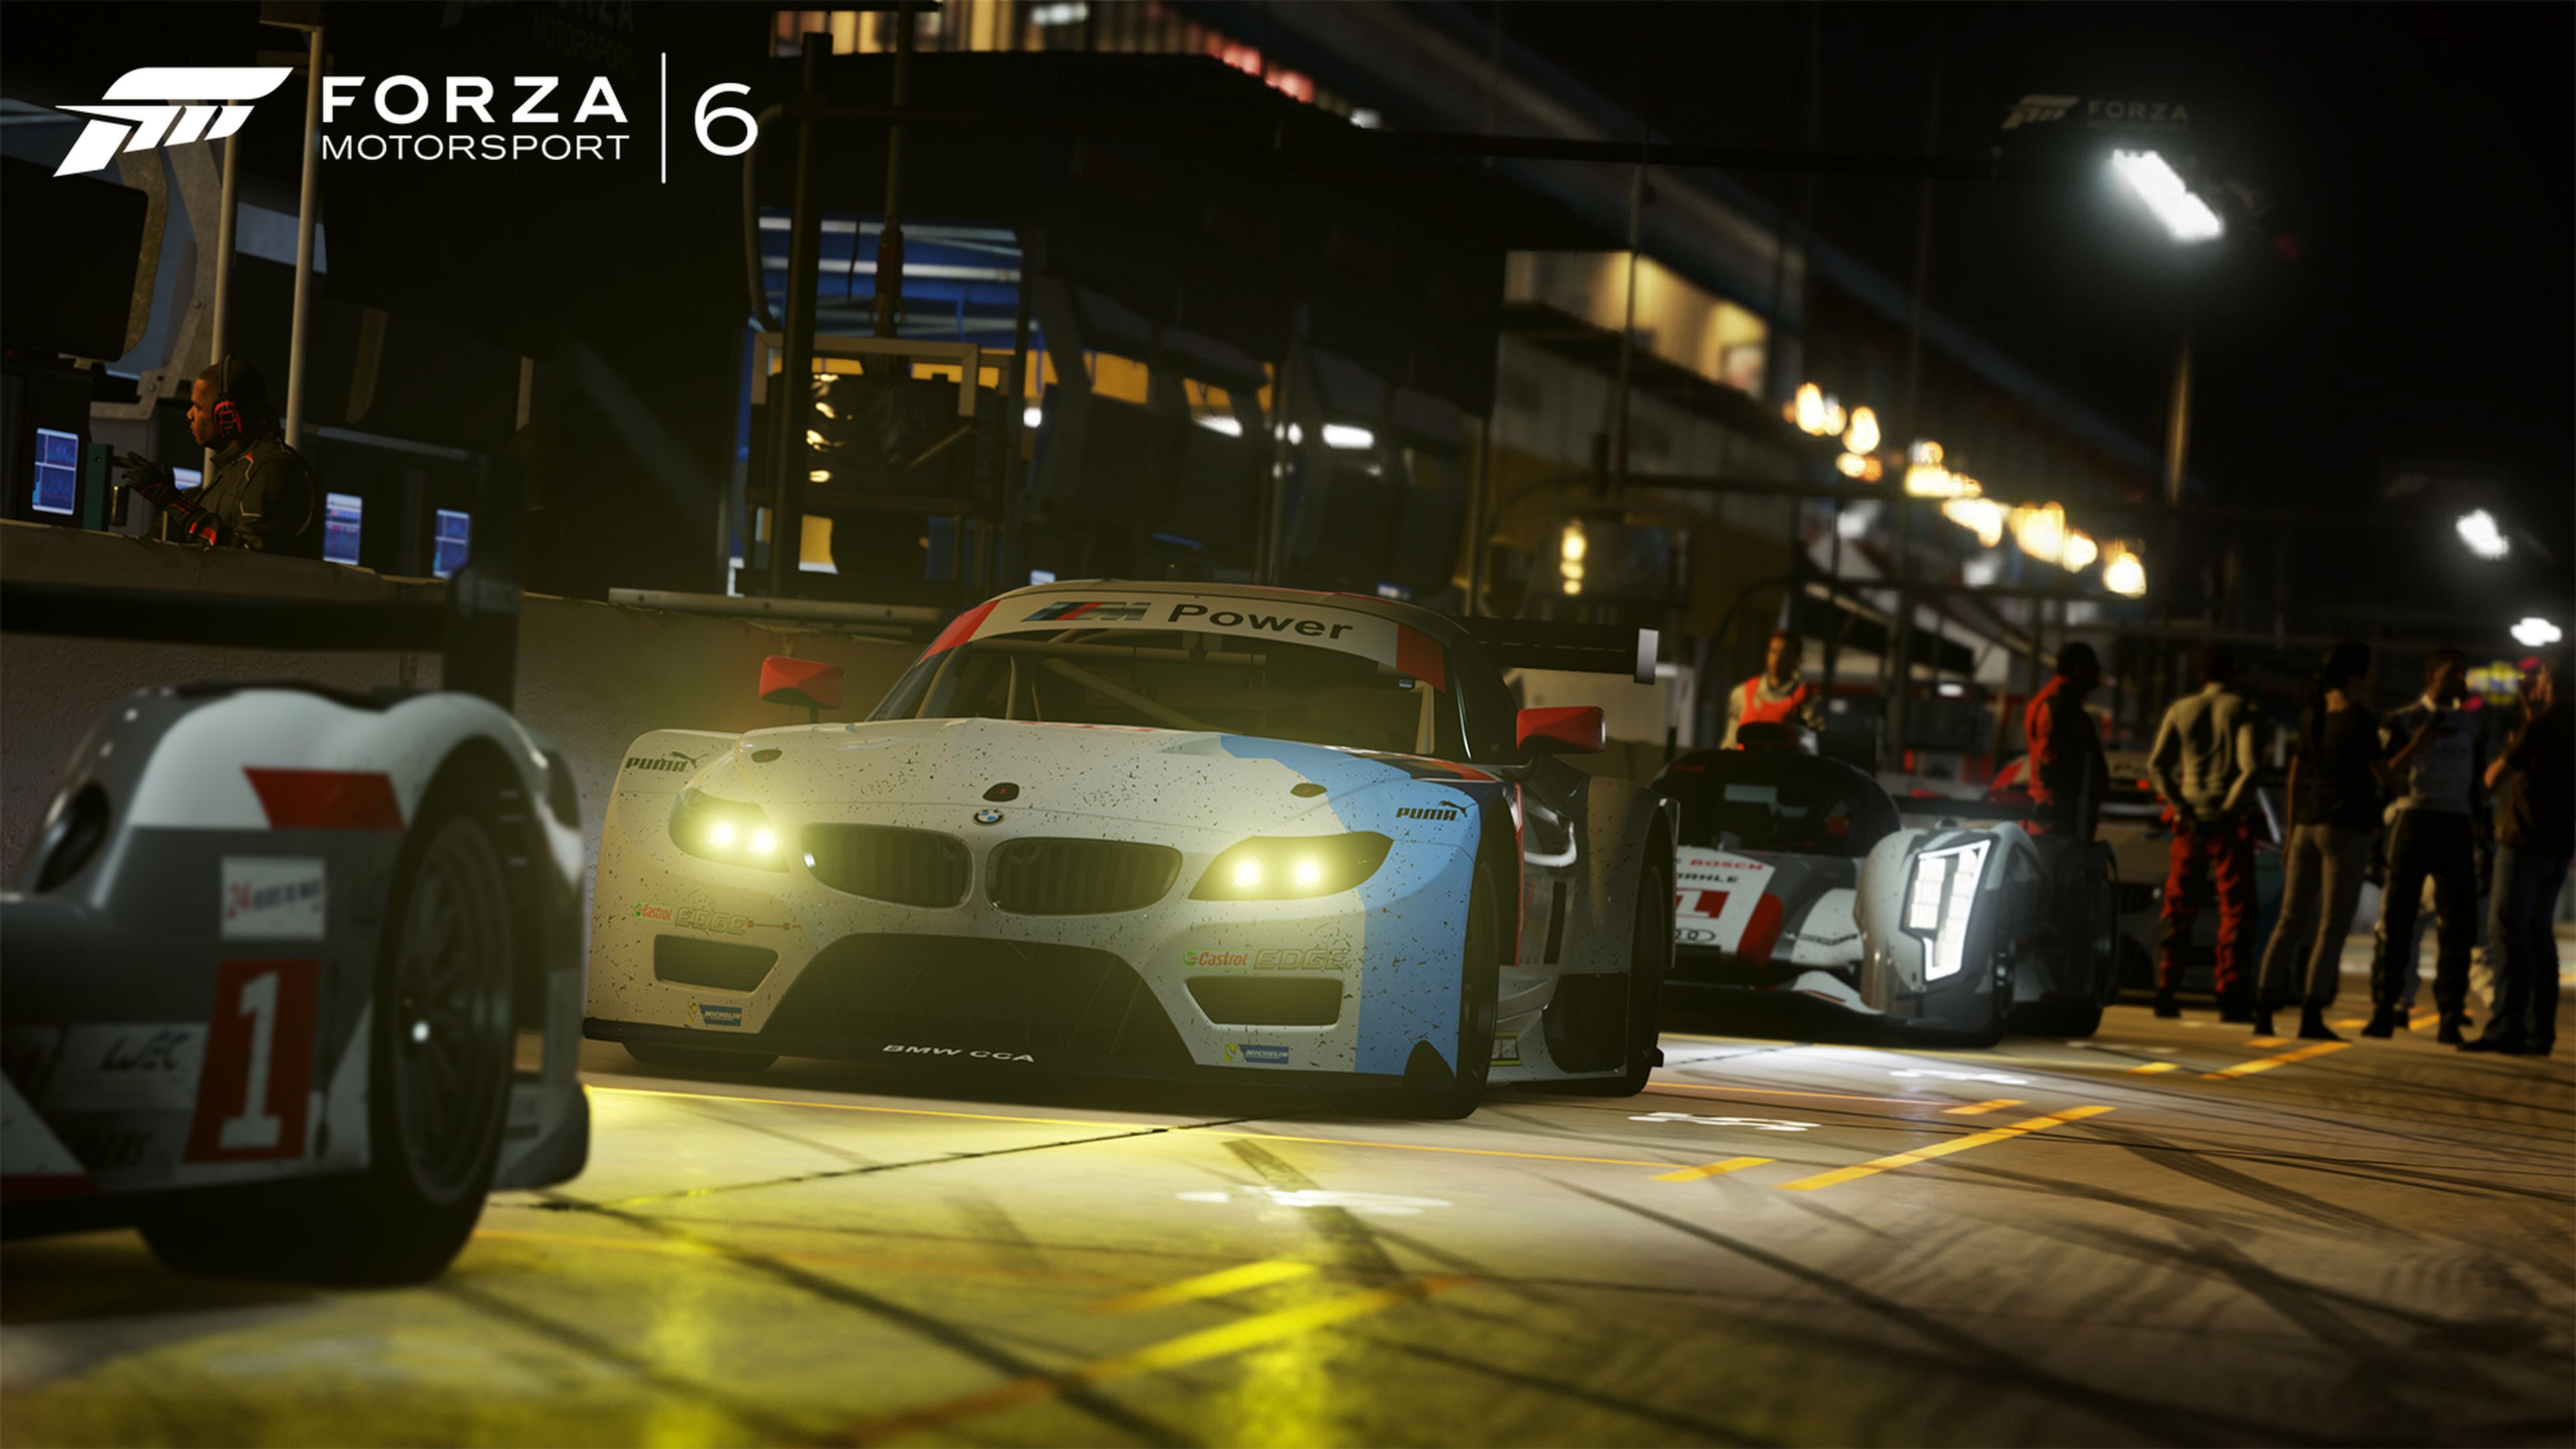 Lista con los 40 nuevos coches confirmados para Forza Motorsport 6